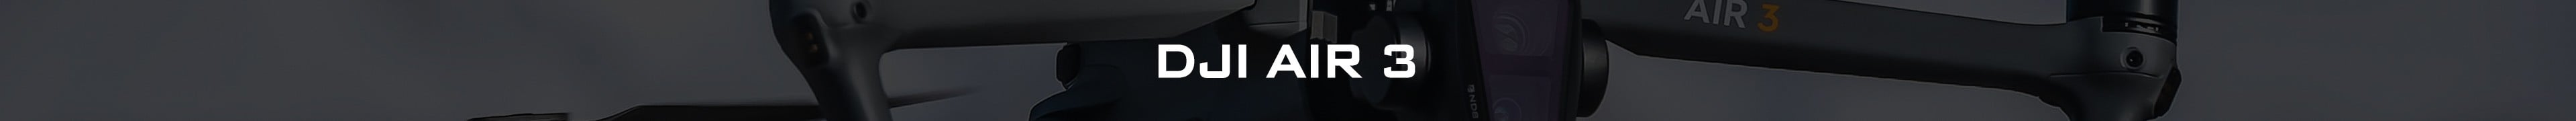 DJI Air 3 ND フィルター